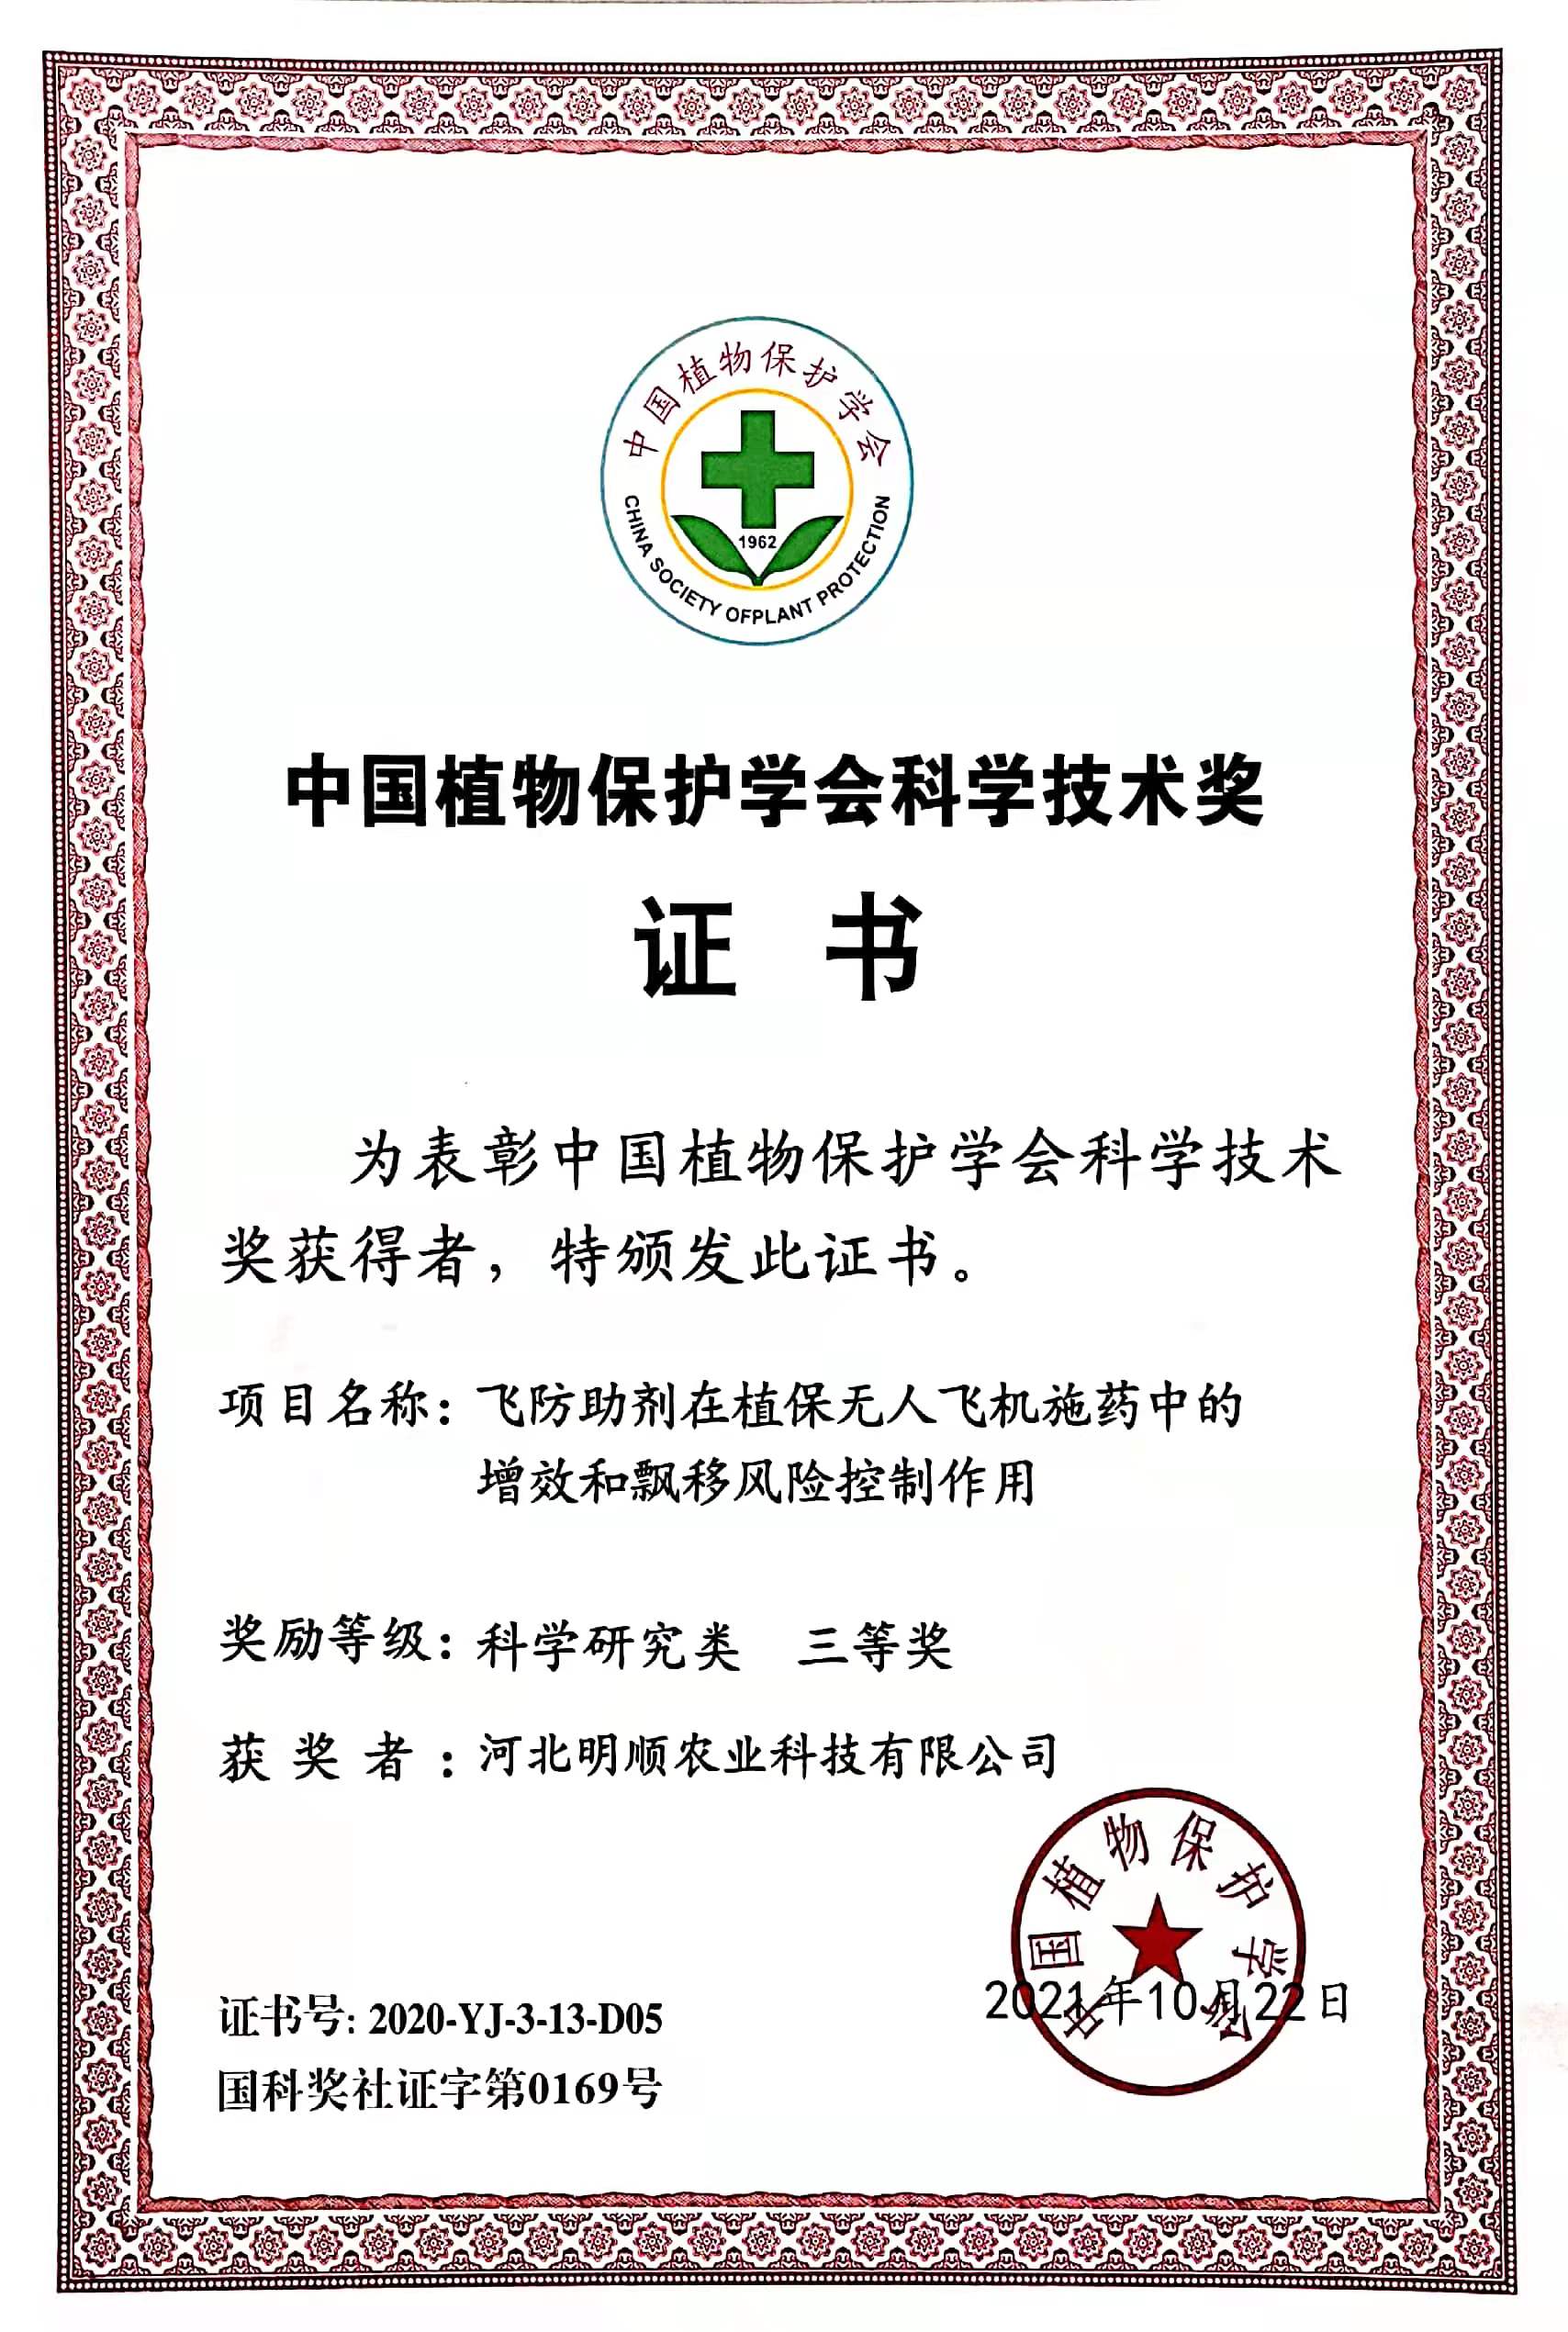 中国植物保护学会科技技术奖